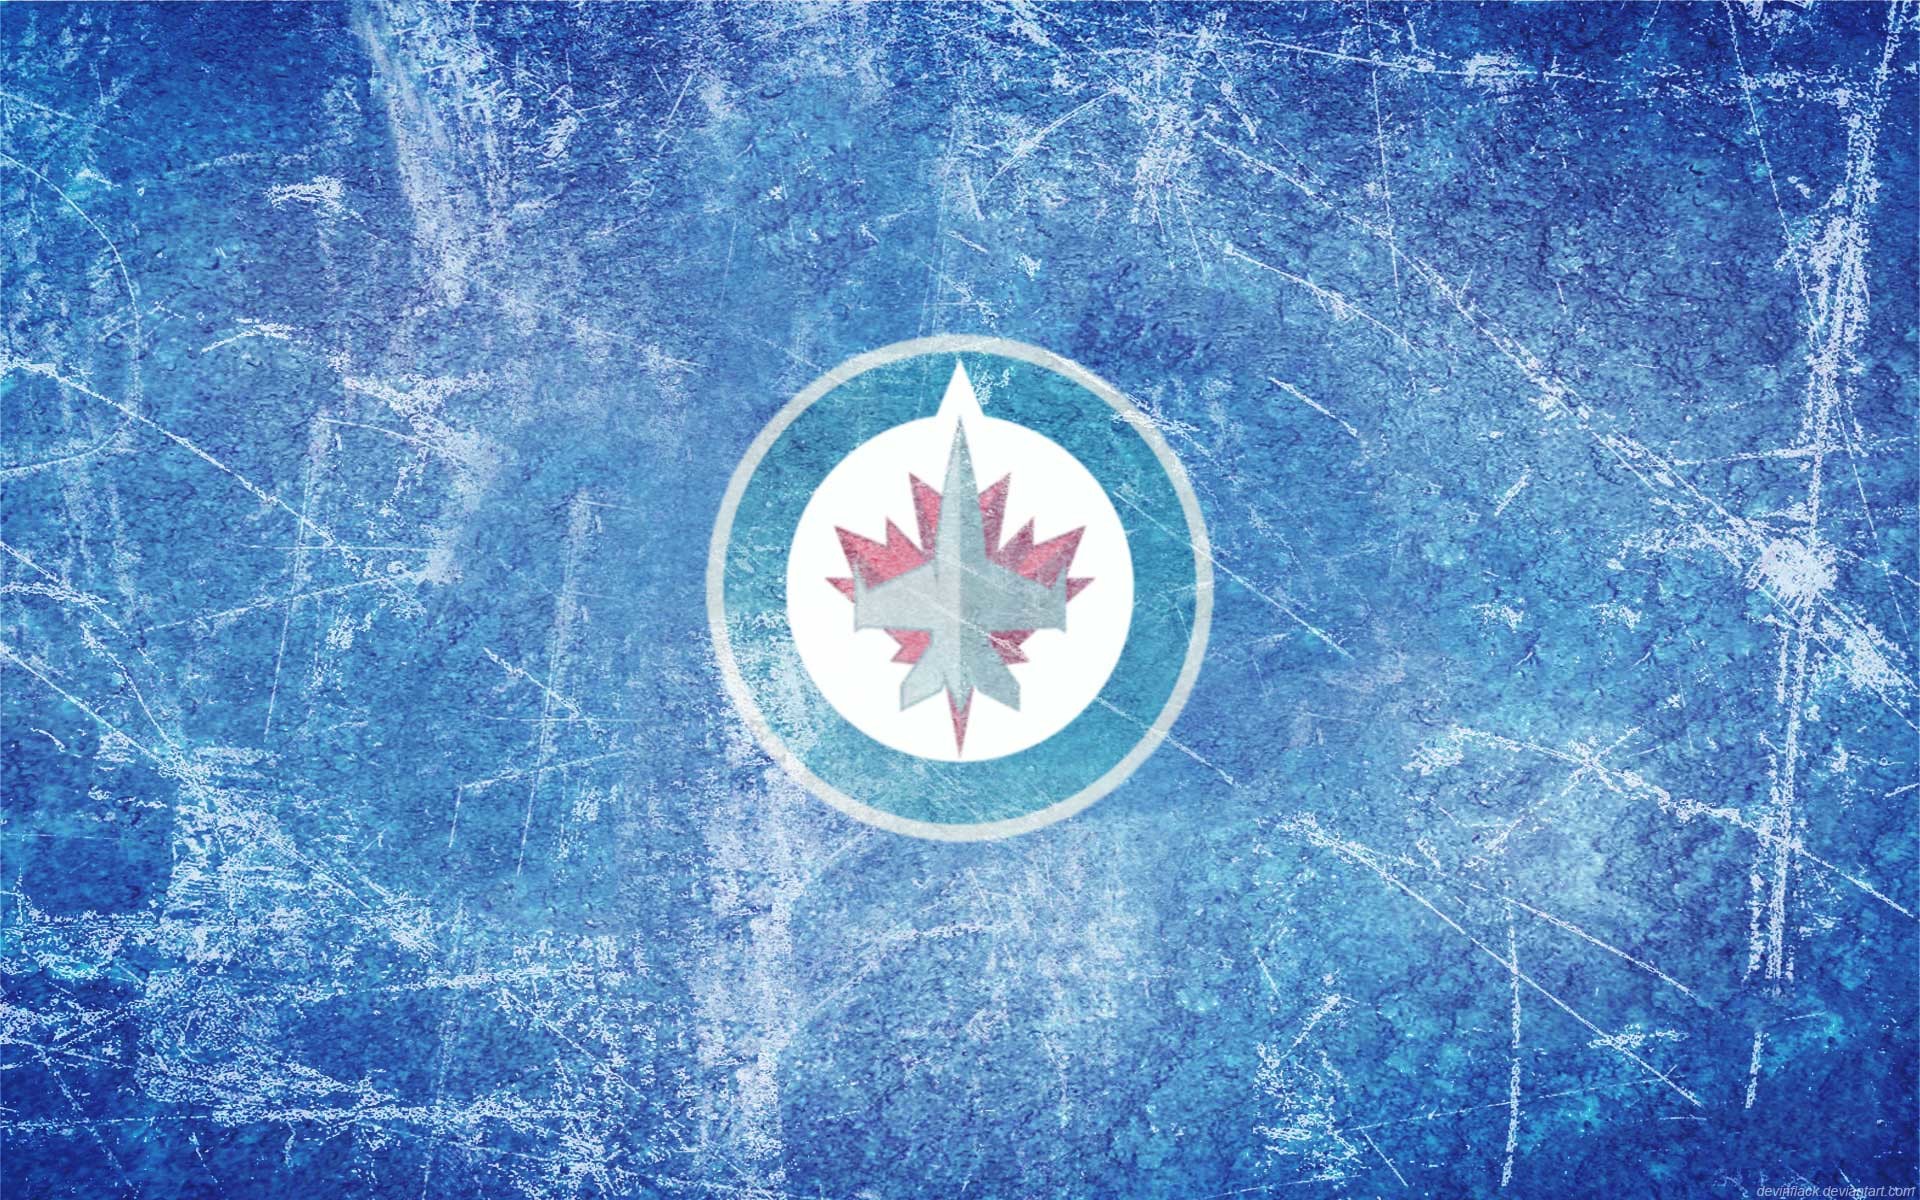 Winnipeg Jets wallpapers for desktop, download free Winnipeg Jets